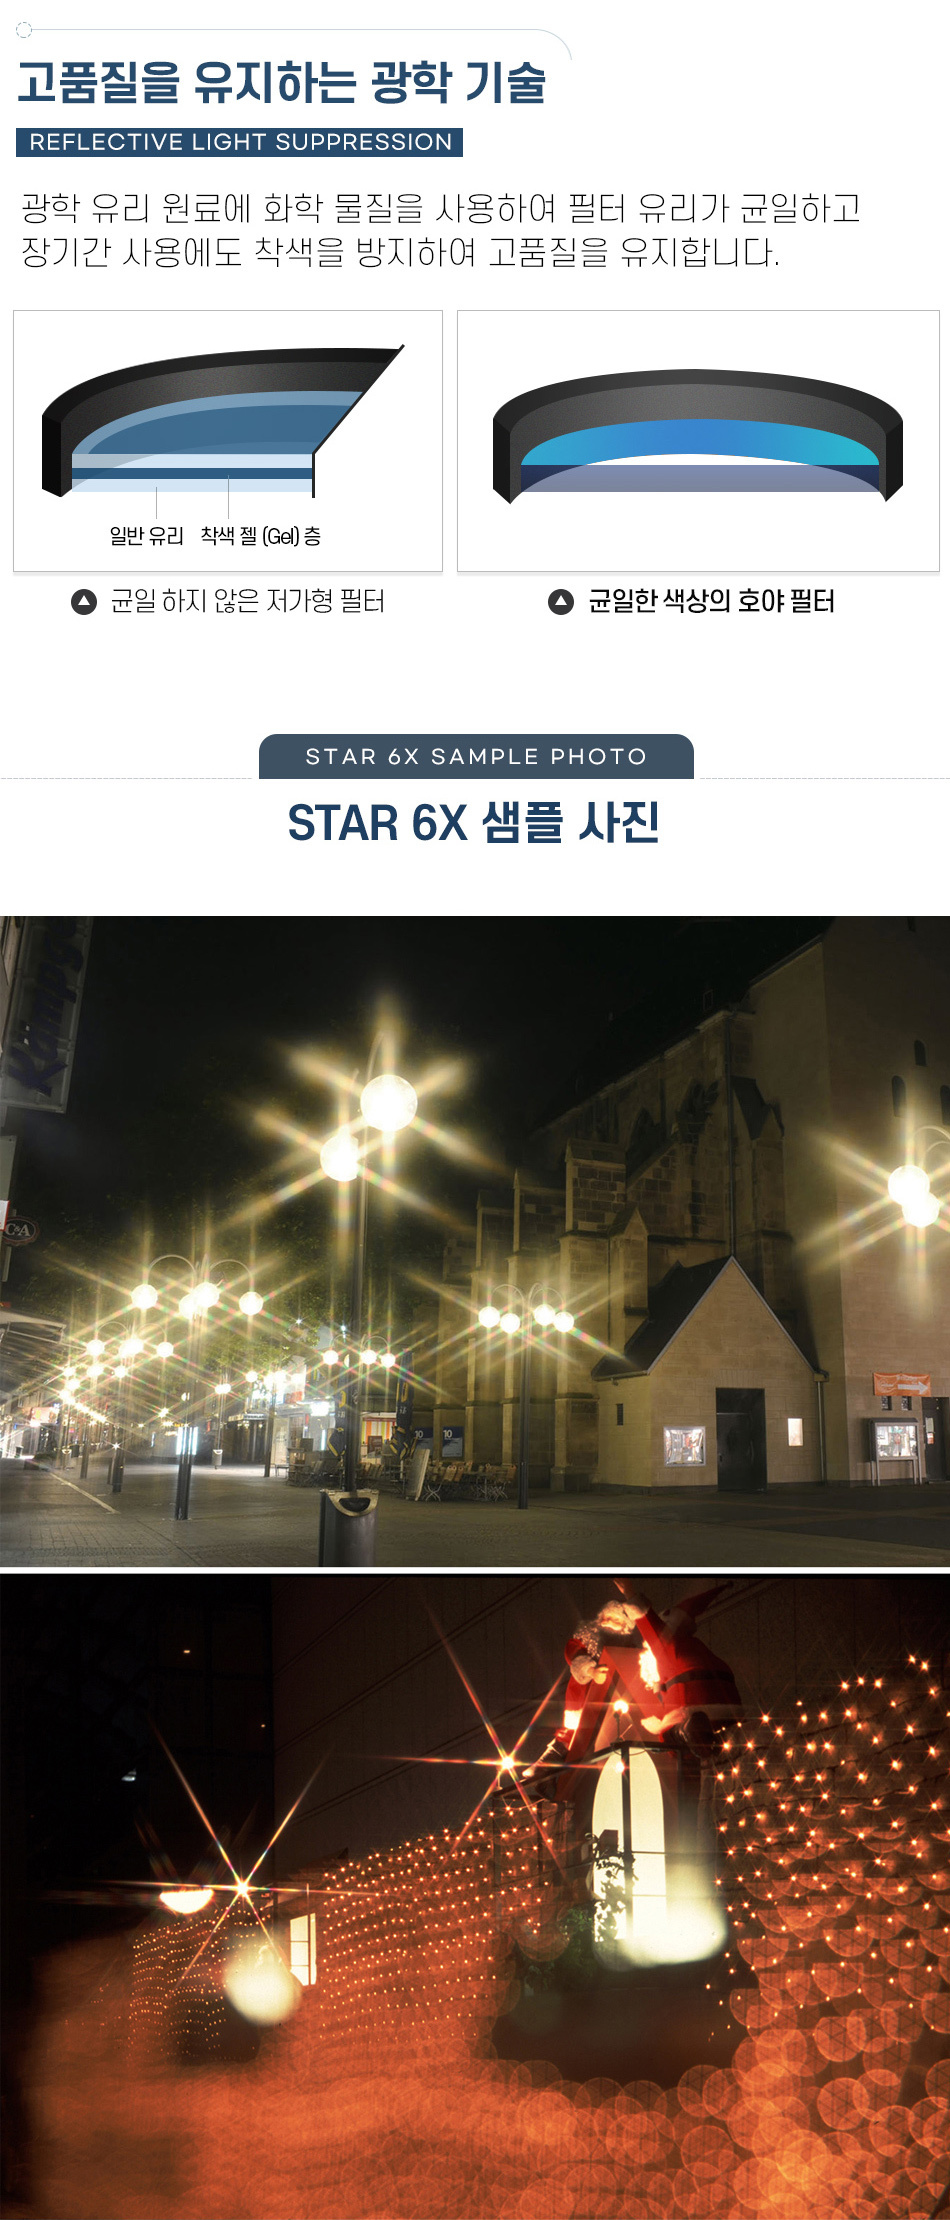 star_6x_04.jpg